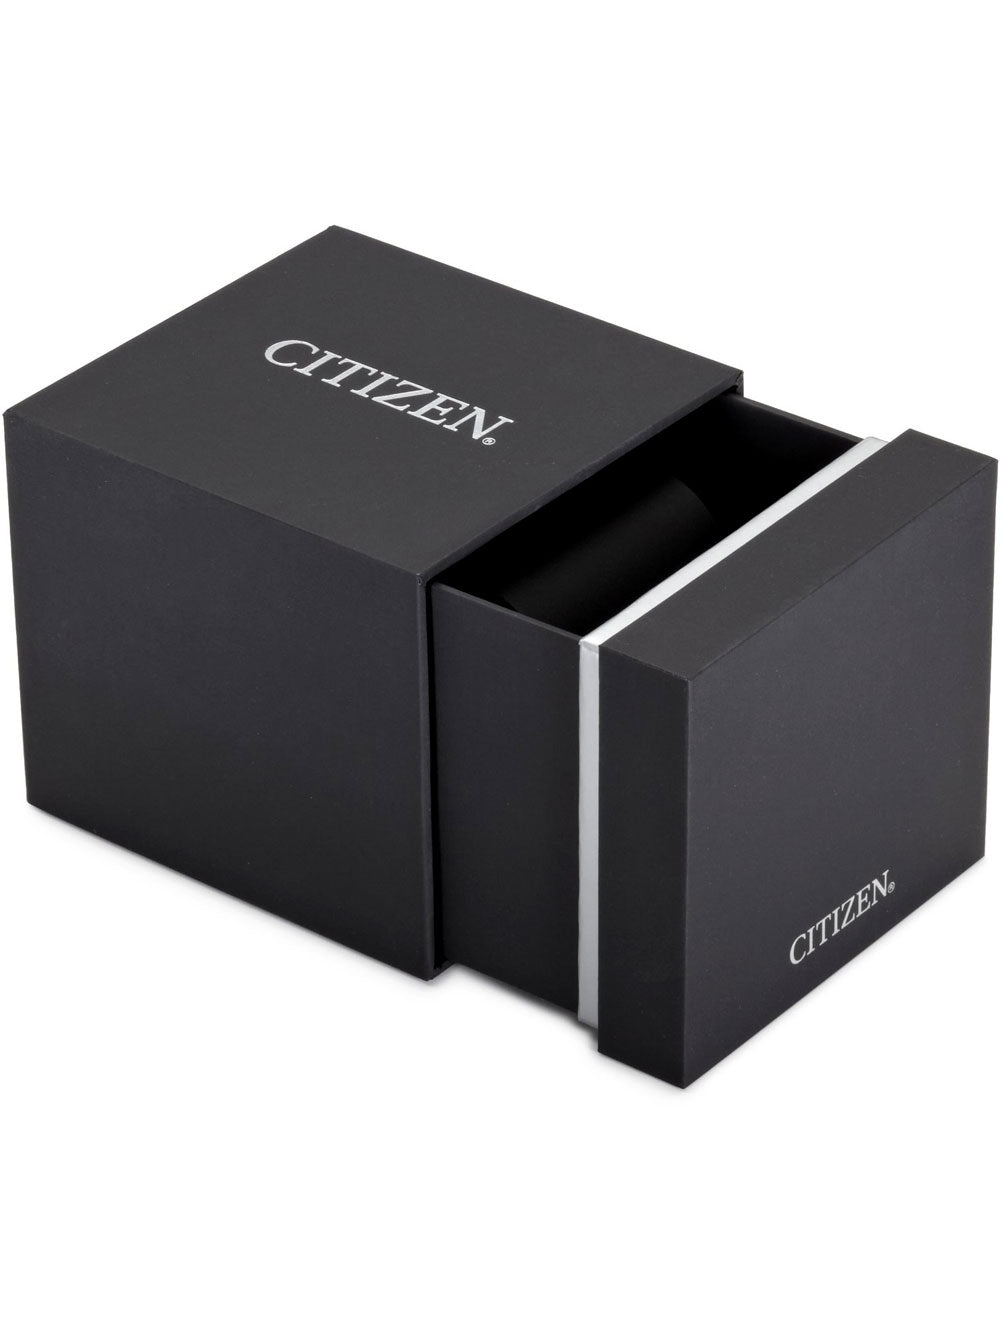 Citizen Eco-Drive Chronograph CA0695-84E 44mm 10ATM